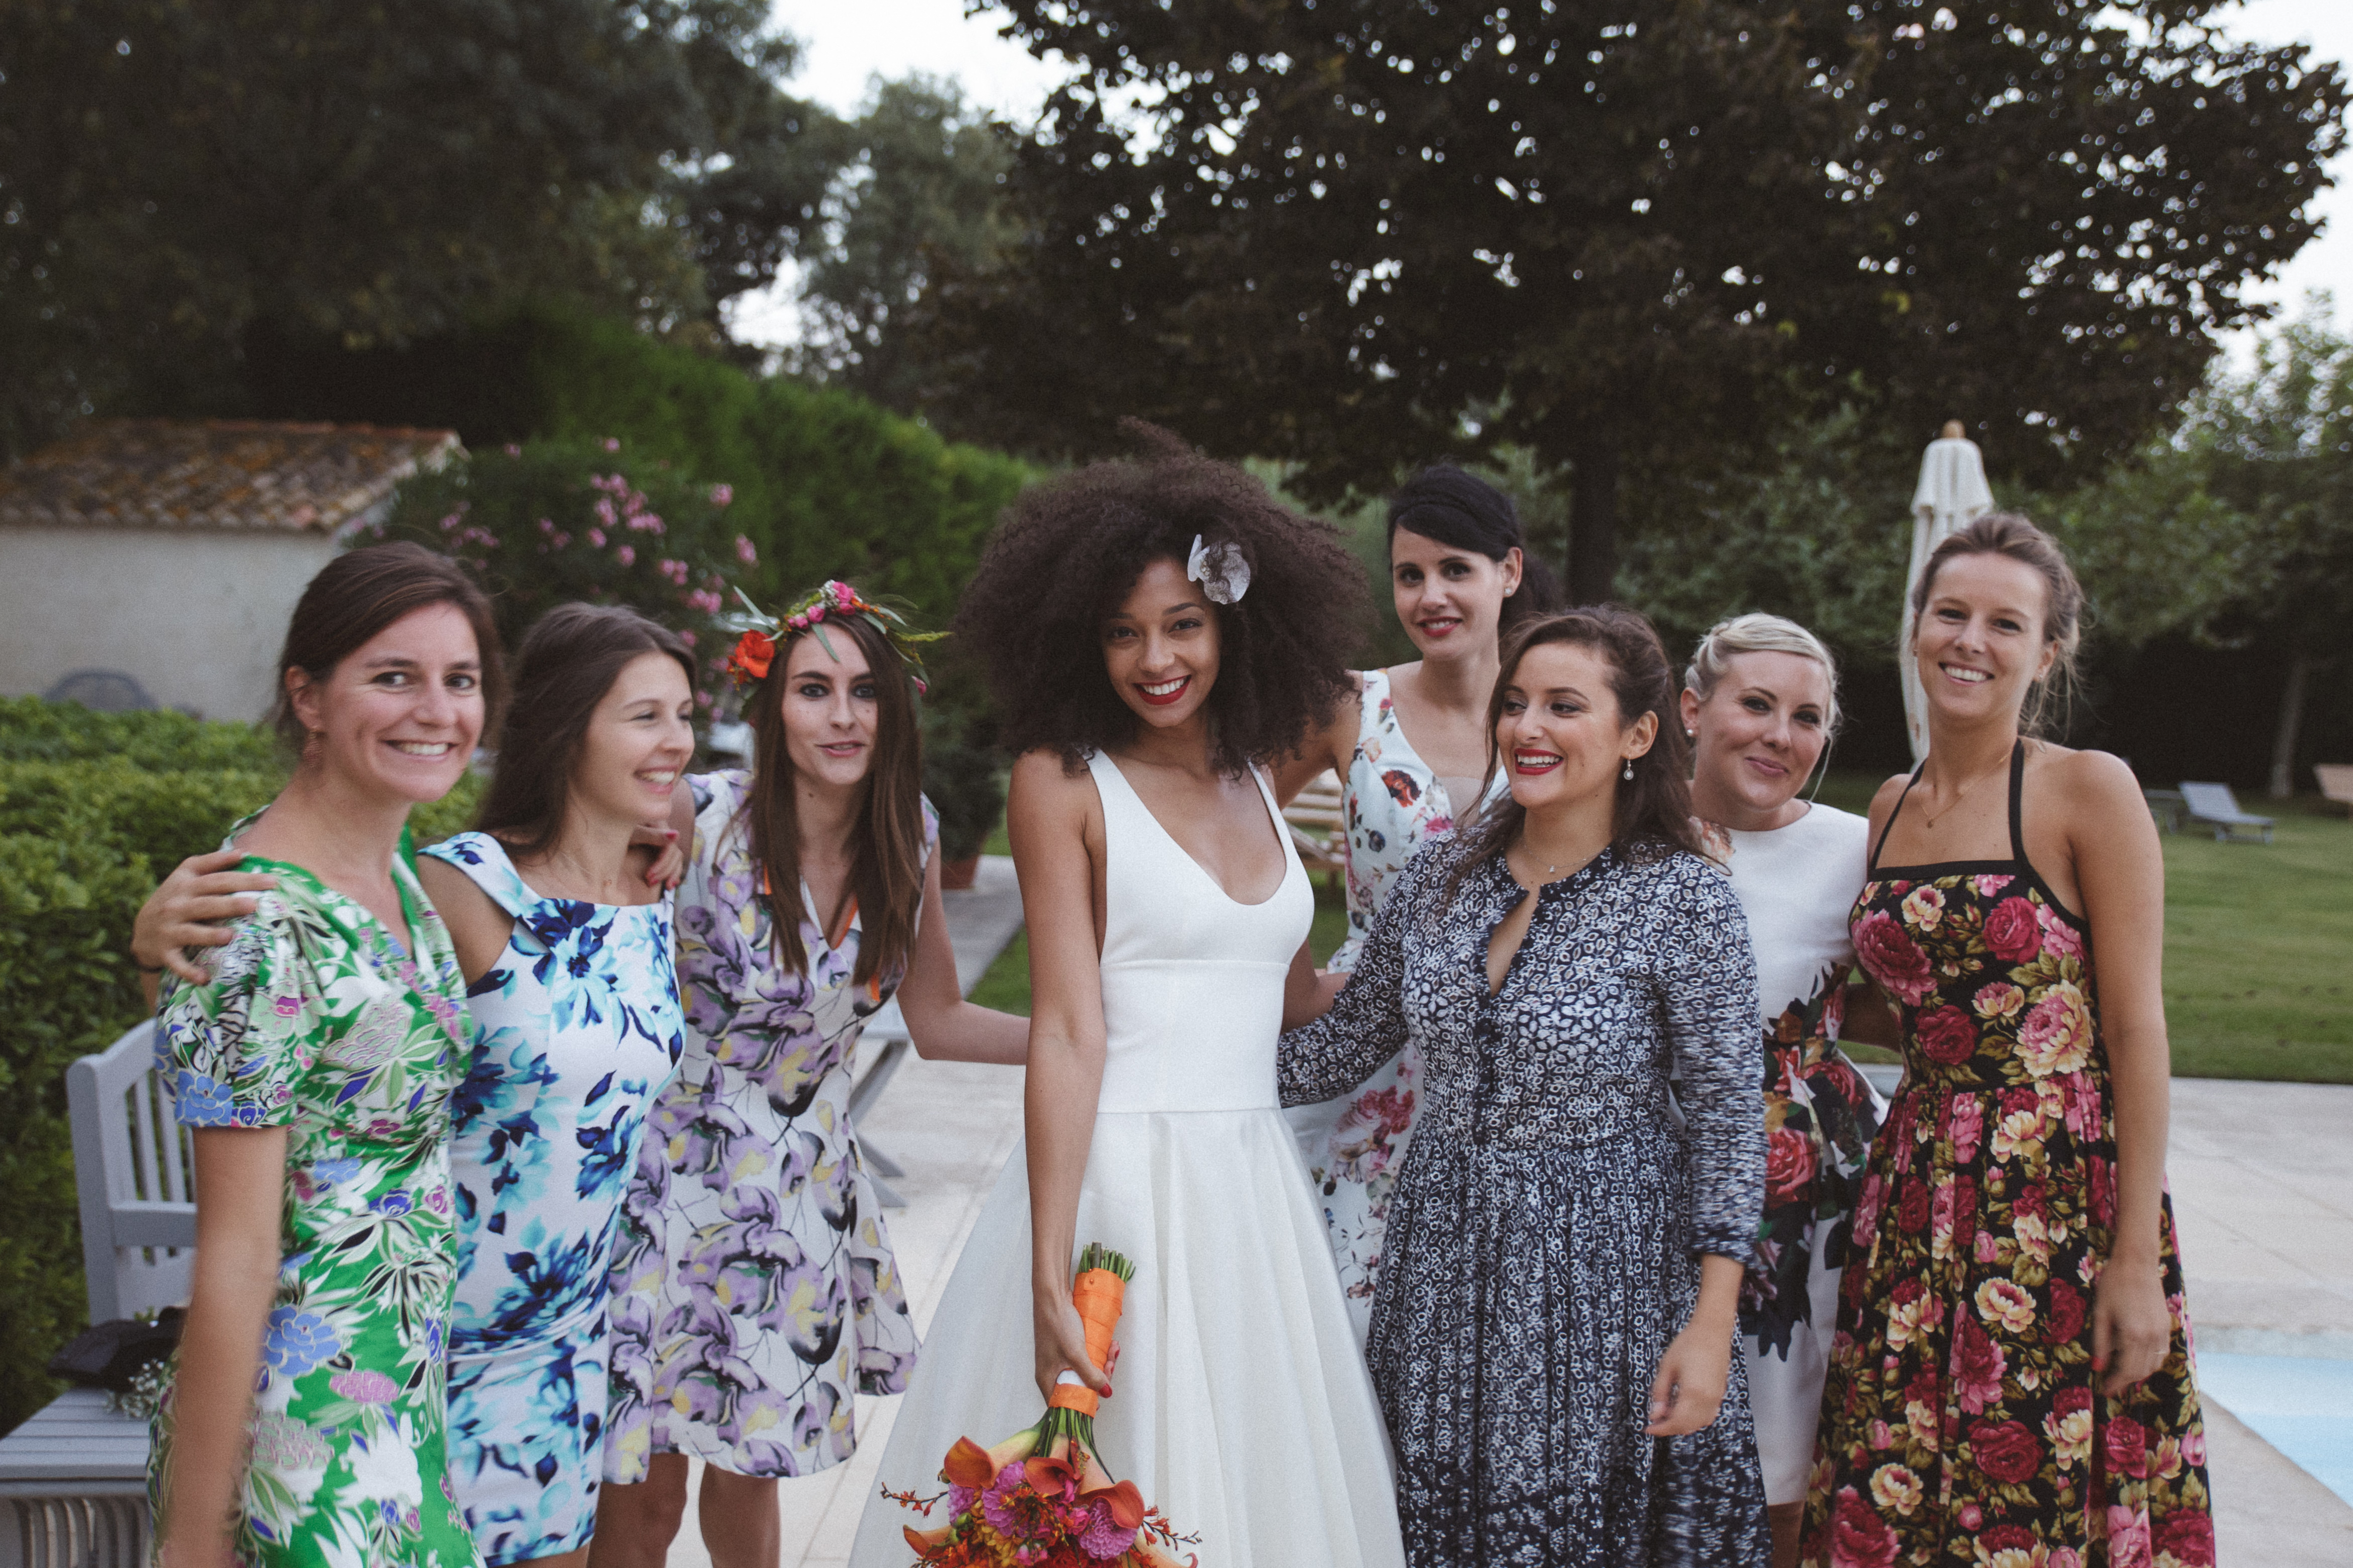 mercredie-mariage-blog-bouquet-fleurs-aromatics-arles-deco-robe-fleurie-theme-mismatched-dress-dresses-mas-de-peint-bridesmaids-dresscode-bride